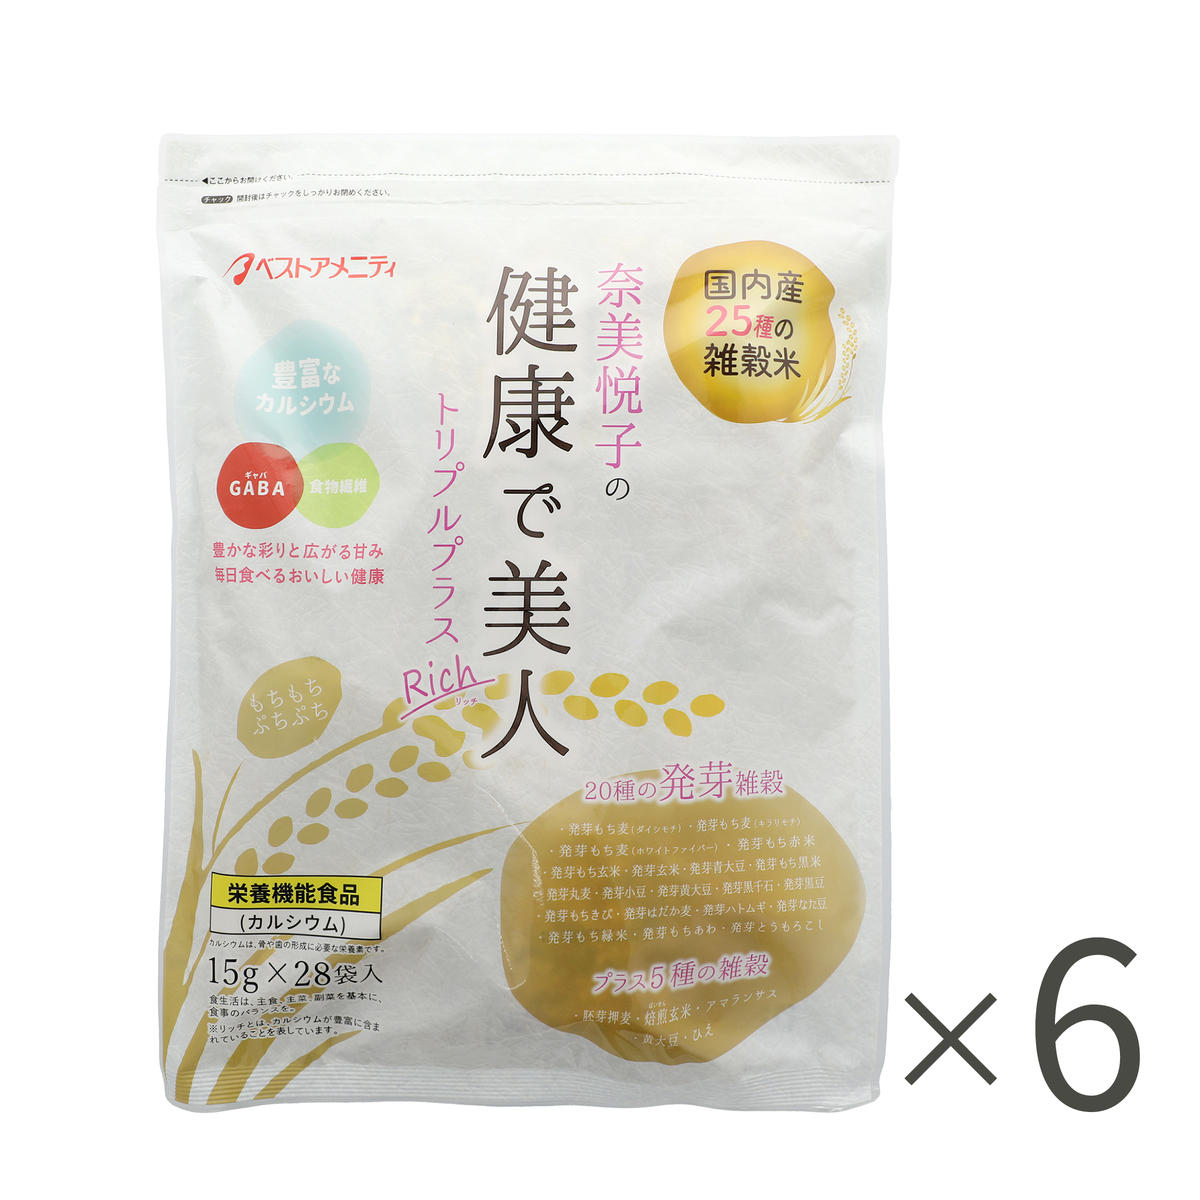 ＜QVCジャパン＞ 奈美悦子の25種雑穀トリプルプラスRich 6袋セット